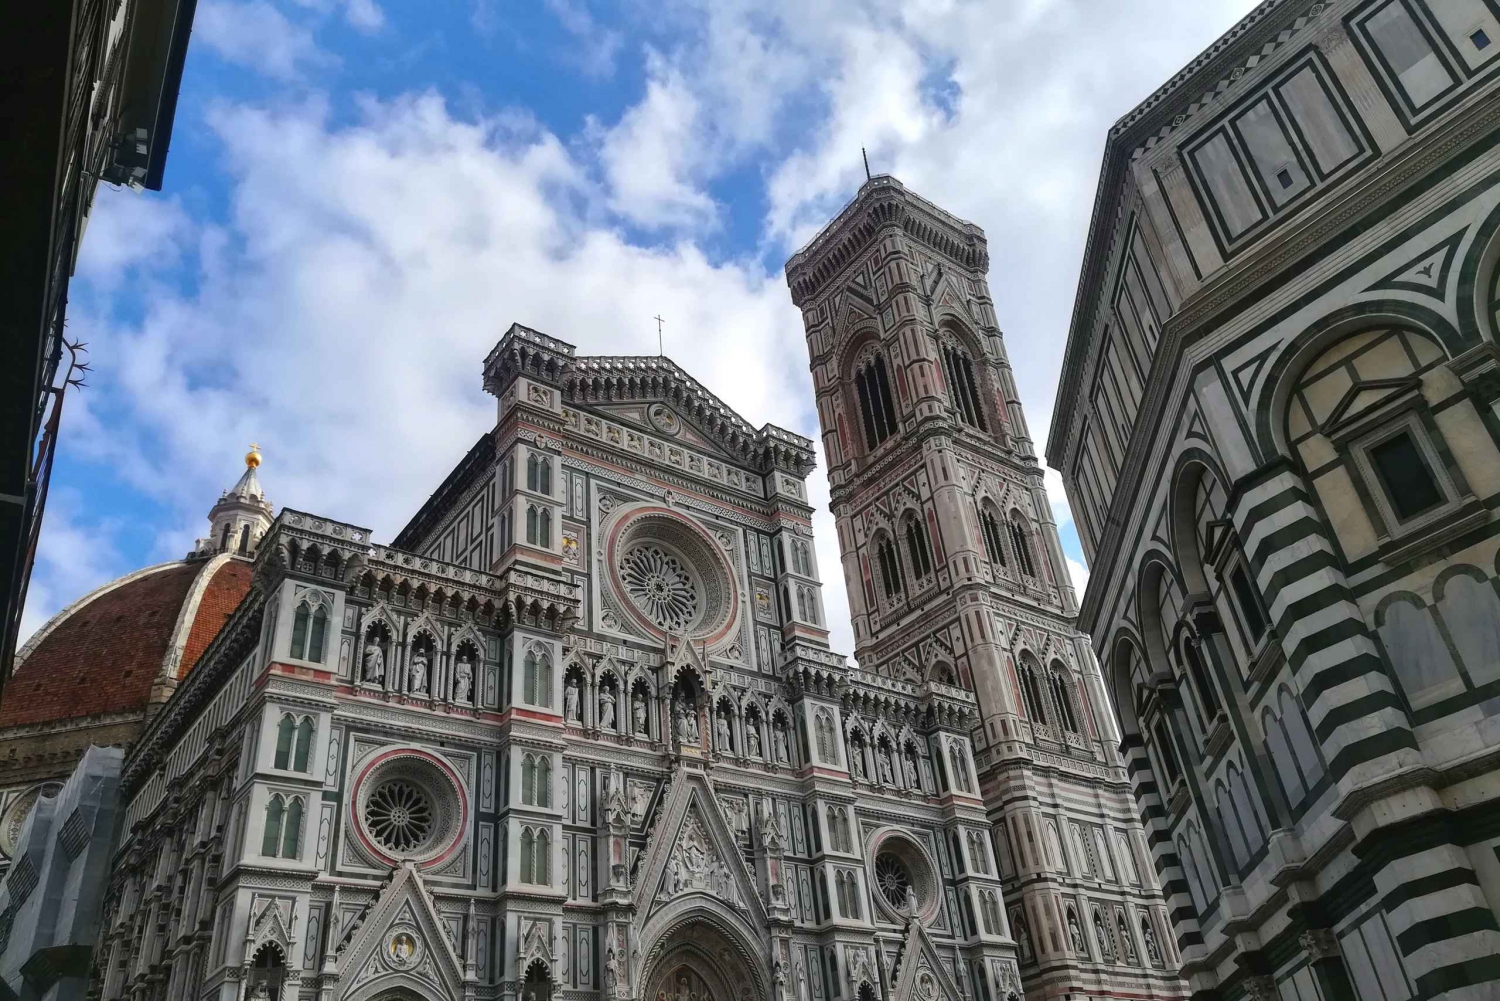 Florencia: Galería de la Academia y Duomo Visita guiada